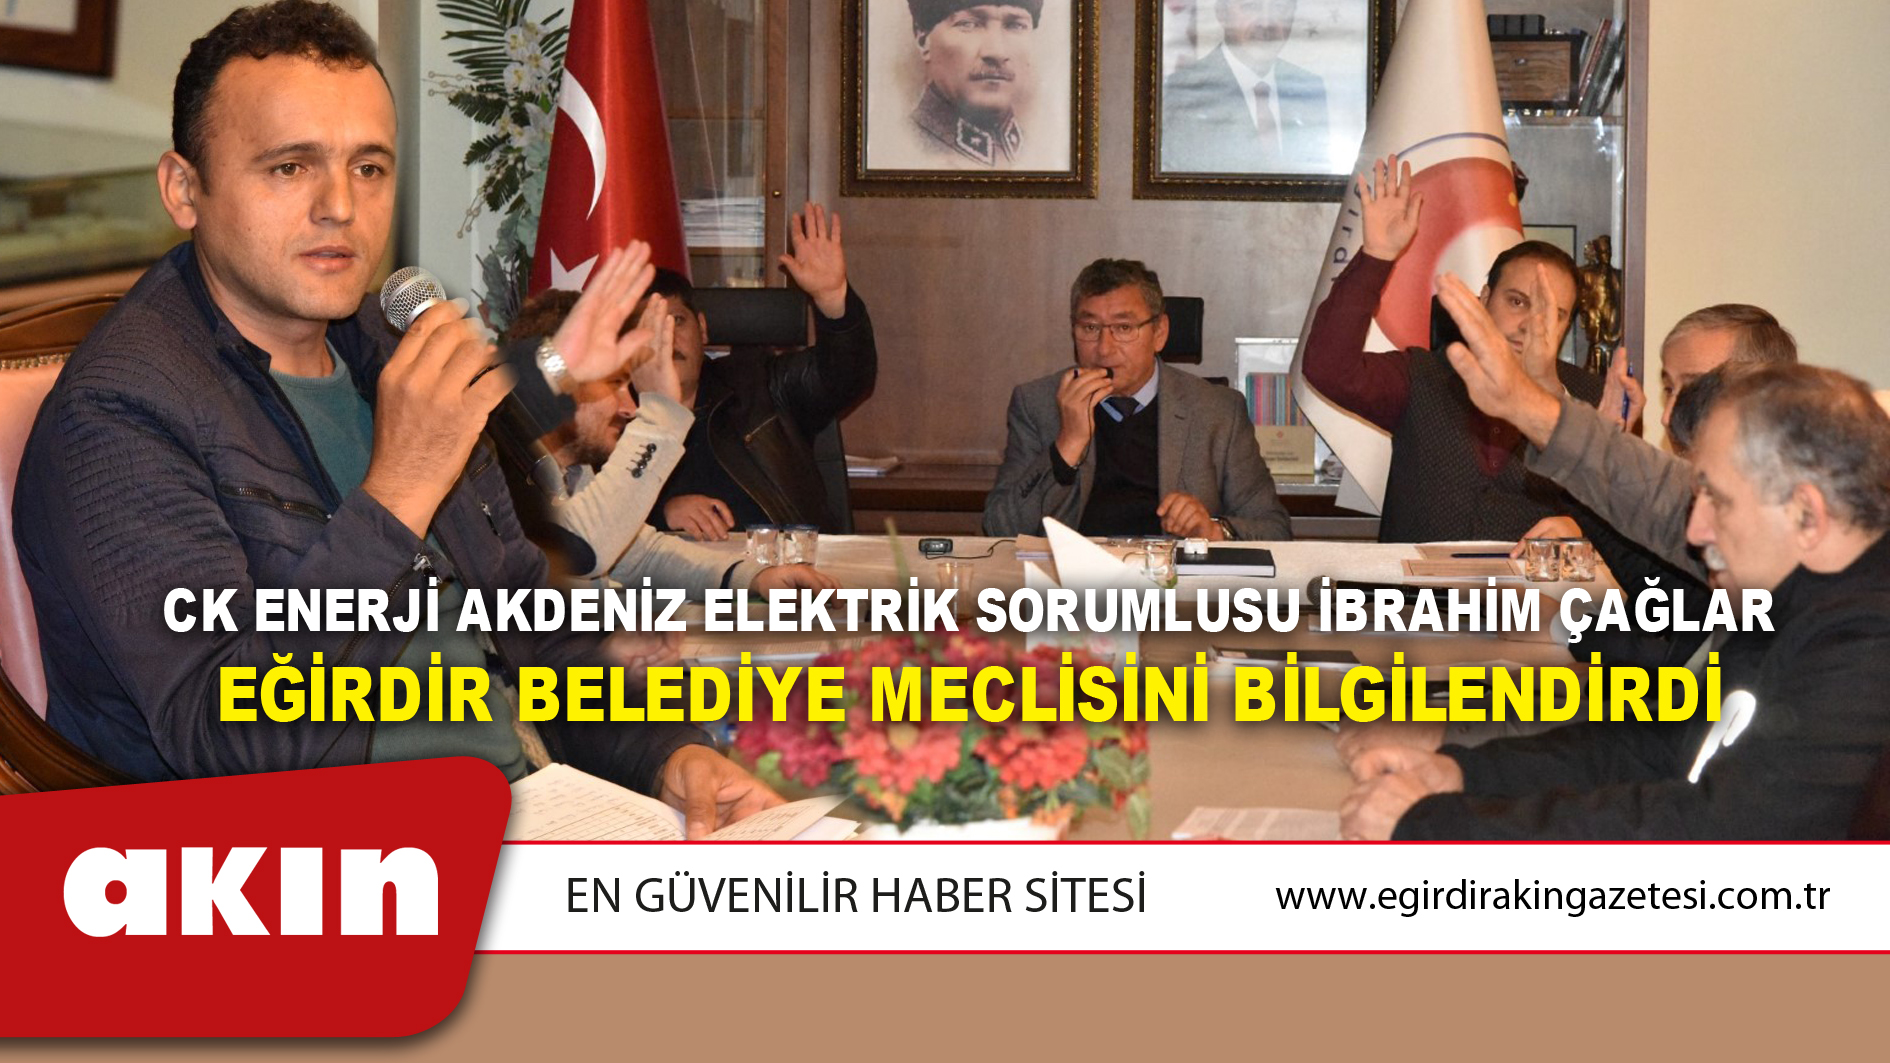 CK Enerji Akdeniz Elektrik Sorumlusu İbrahim Çağlar Eğirdir Belediye Meclisini Bilgilendirdi